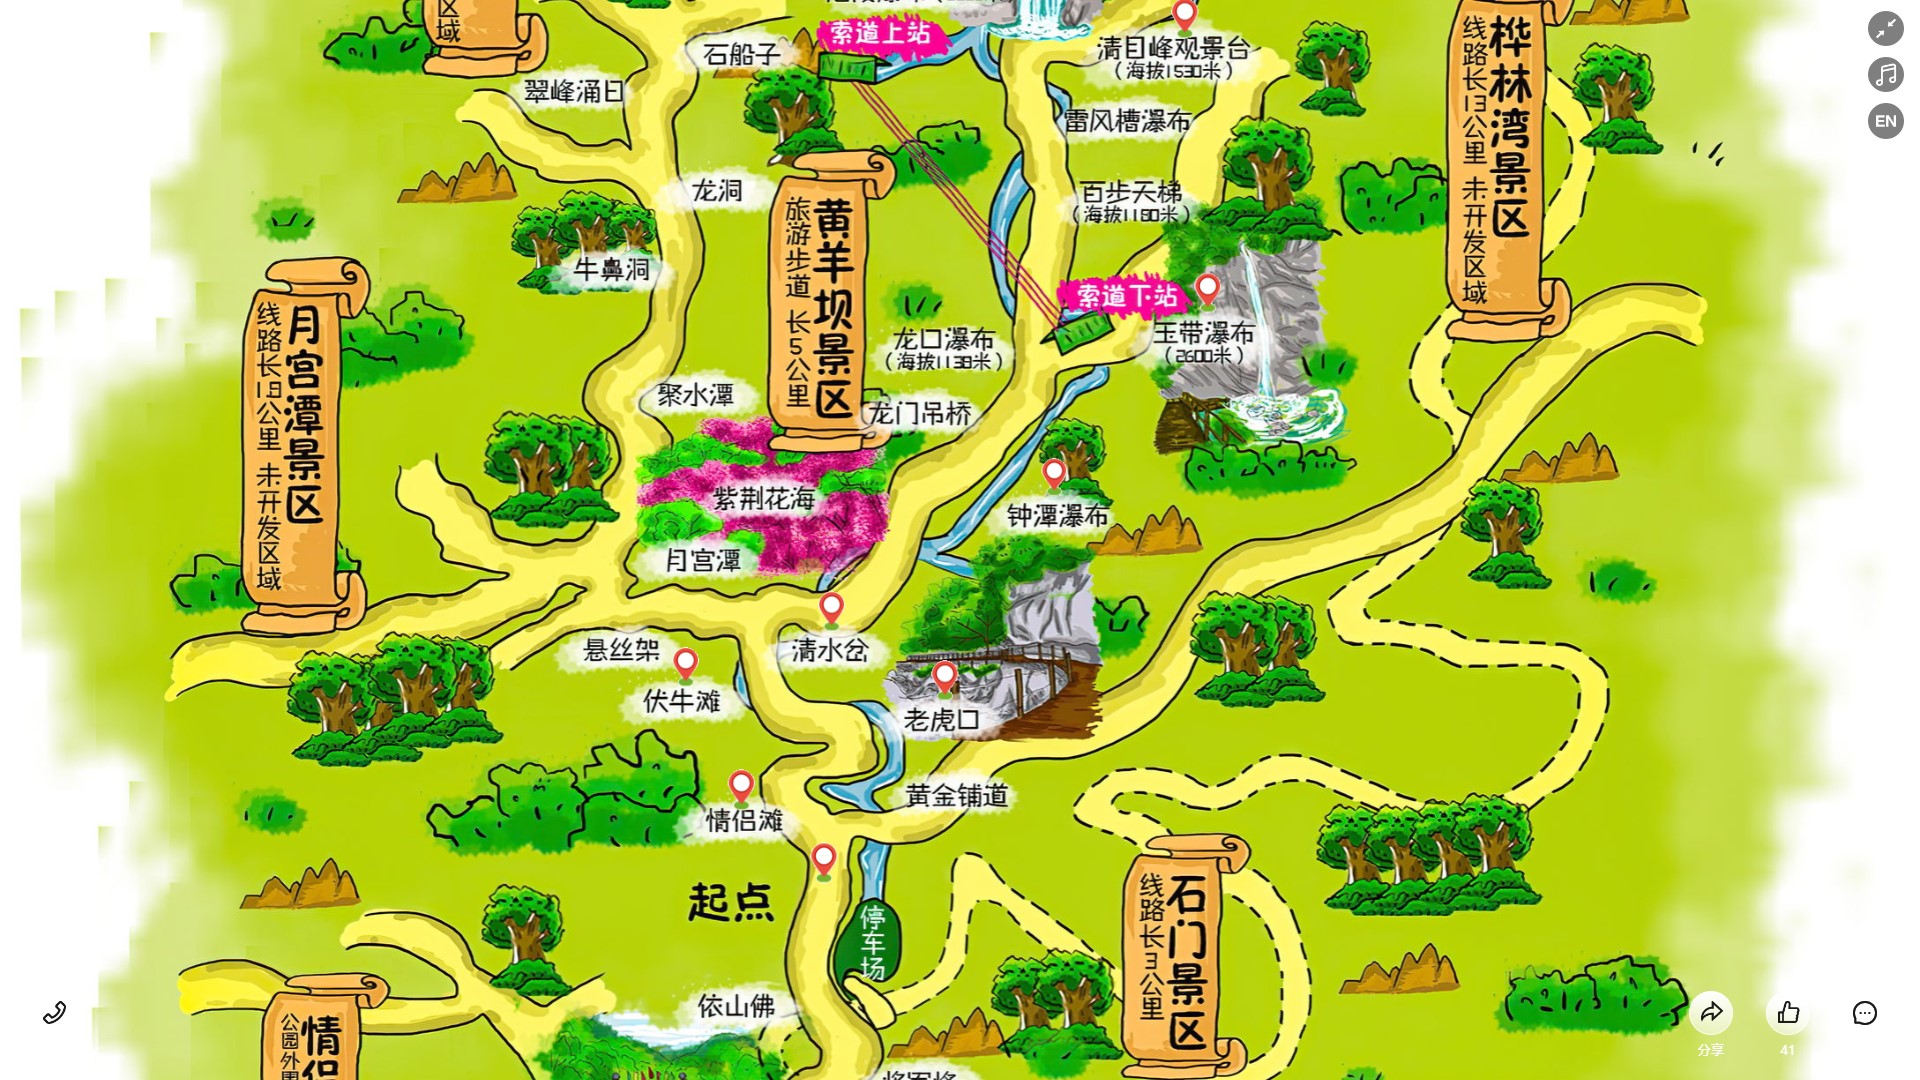 豆河镇景区导览系统